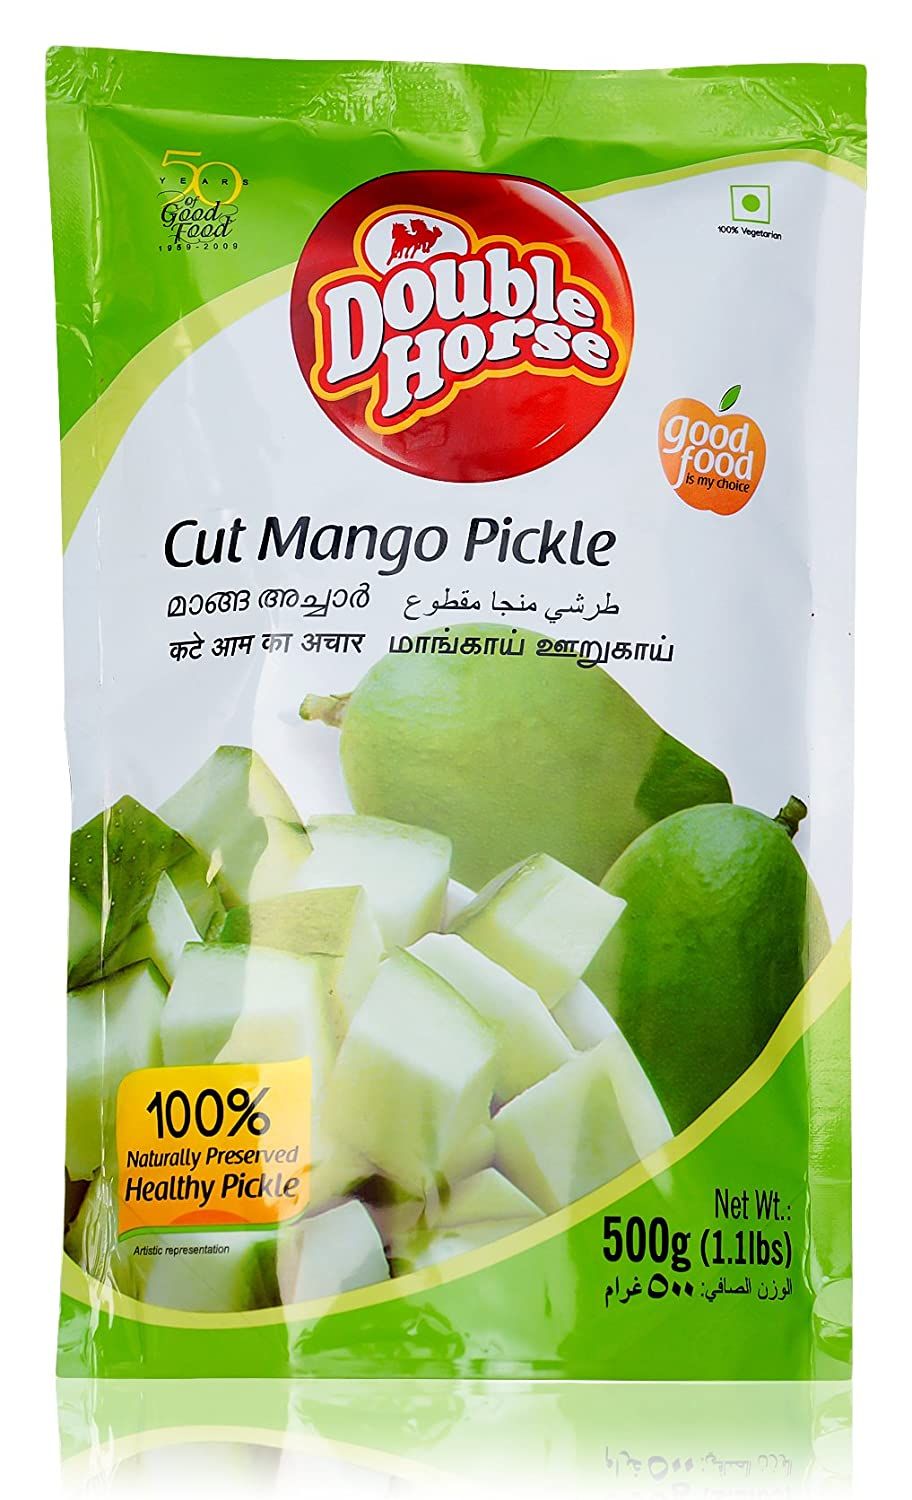 Double Horse Cut Mango Pickle Image